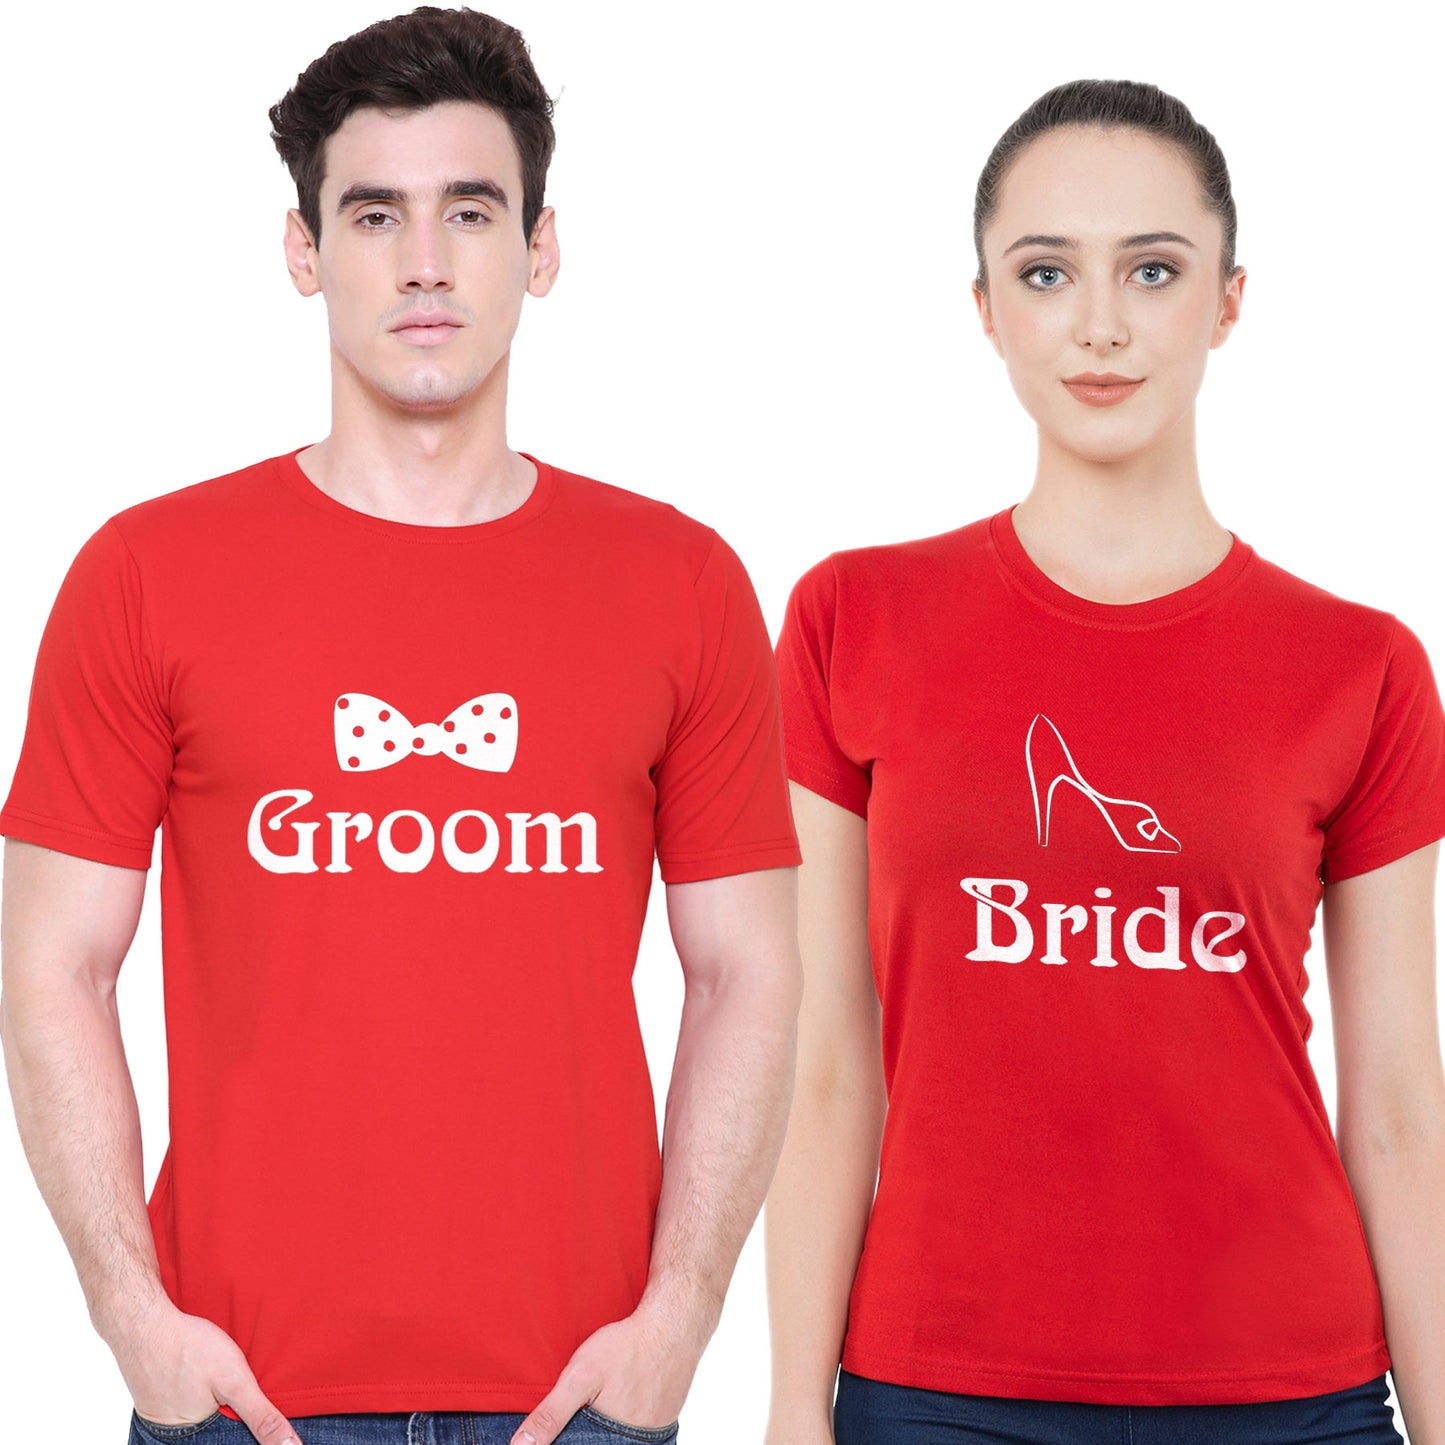 Bride Groom t shirt|wedding tshirts|Couple T shirts- Red 06